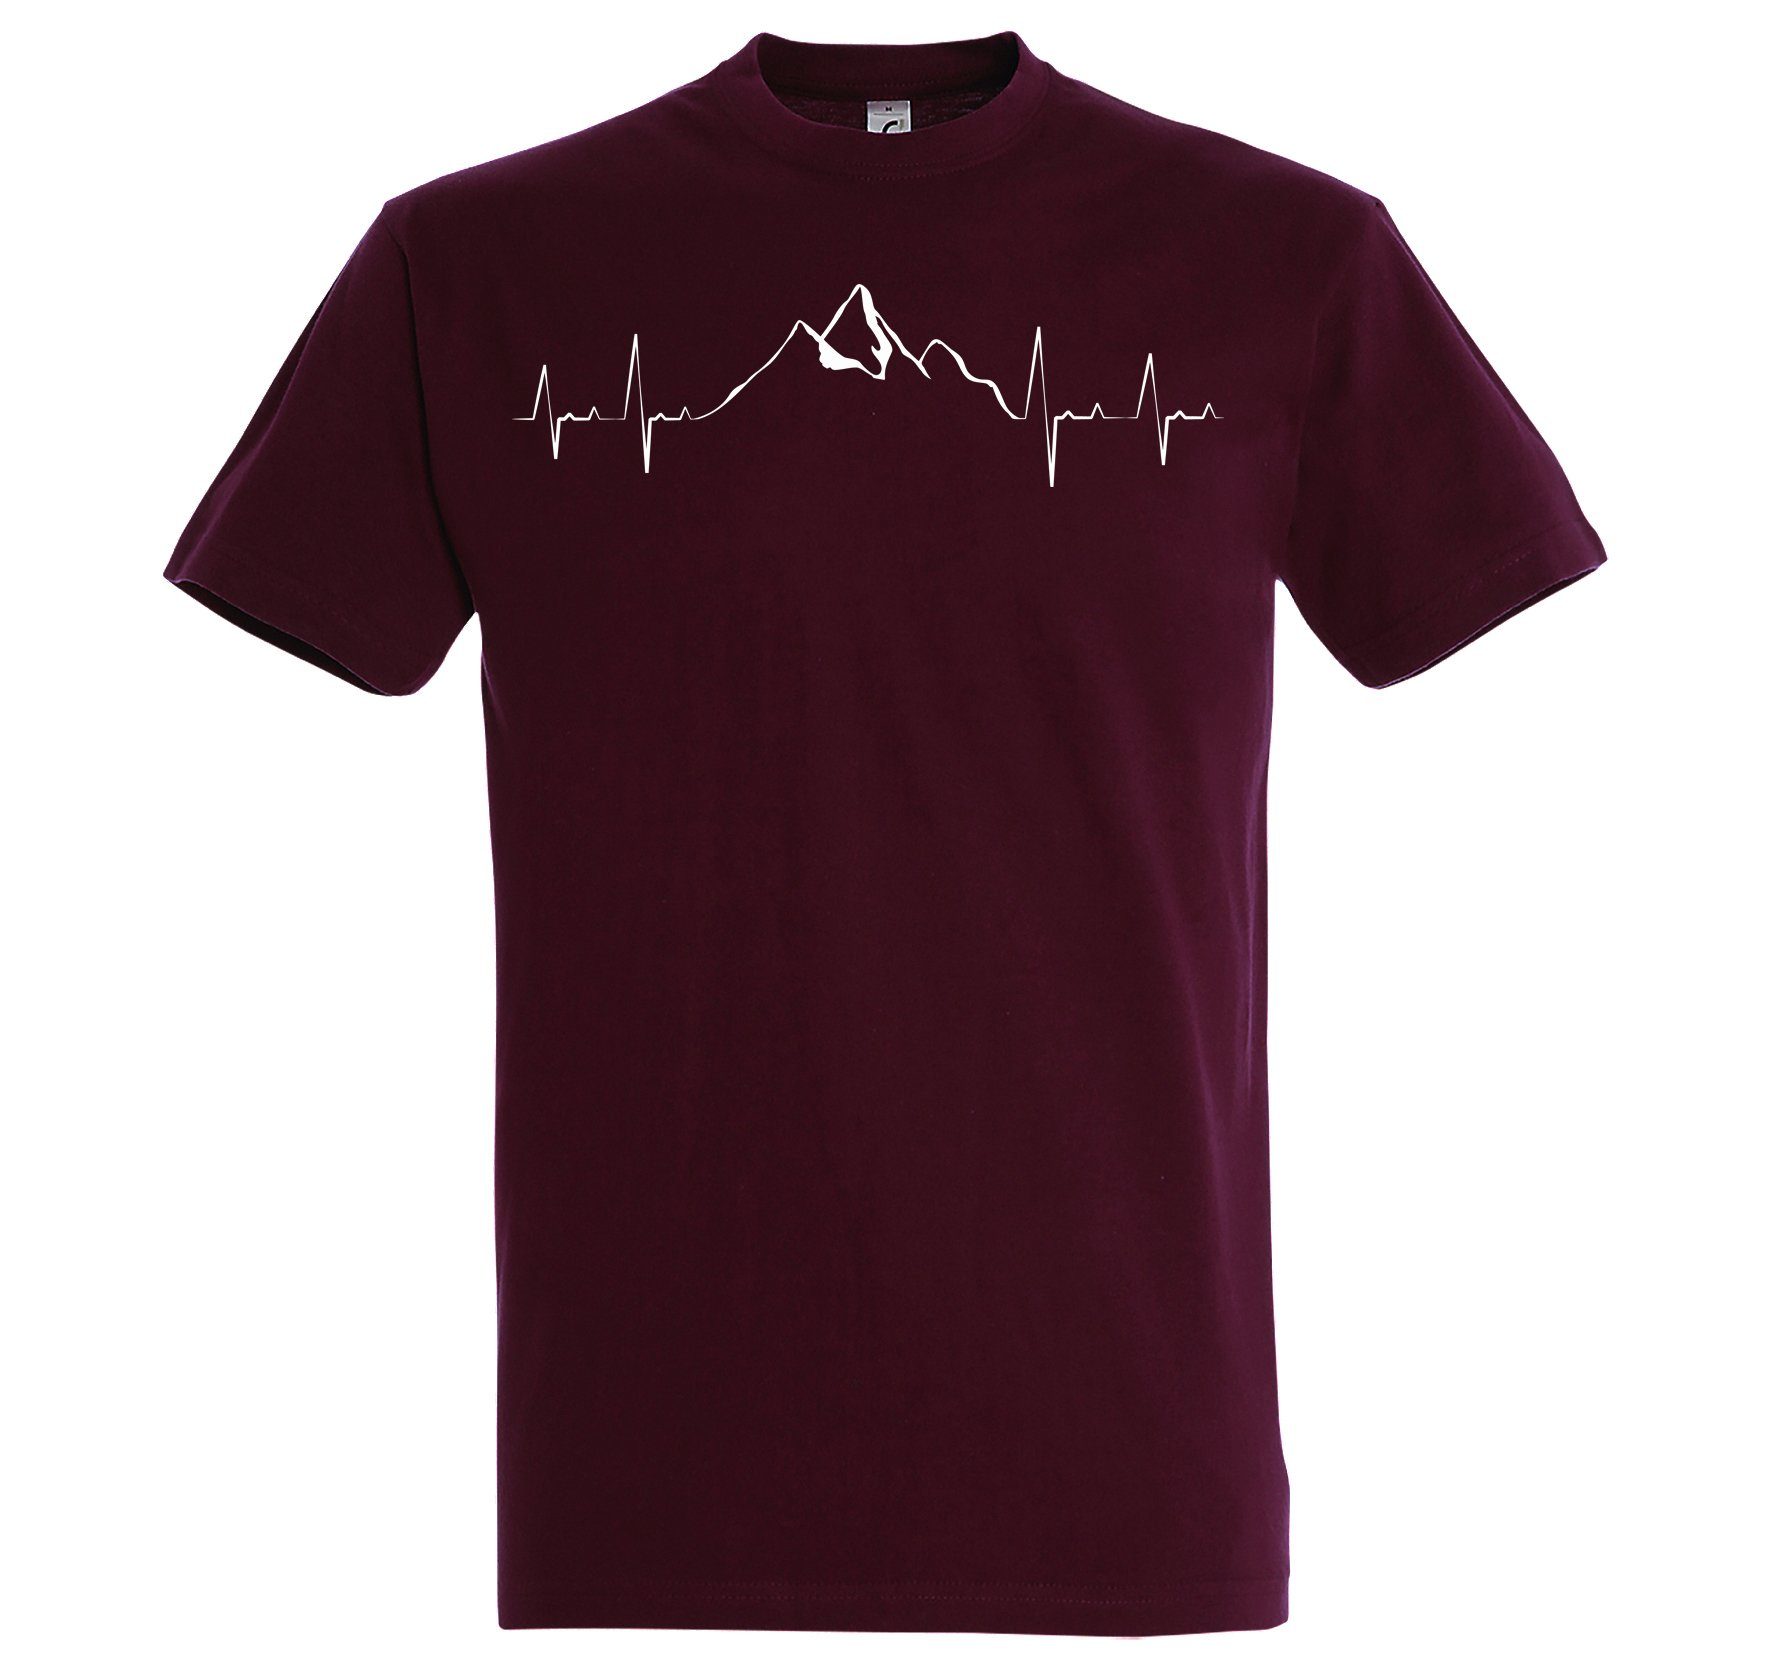 Youth mit Designz Shirt Mountain Burgund Heartbeat Herren trendigem T-Shirt Frontprint